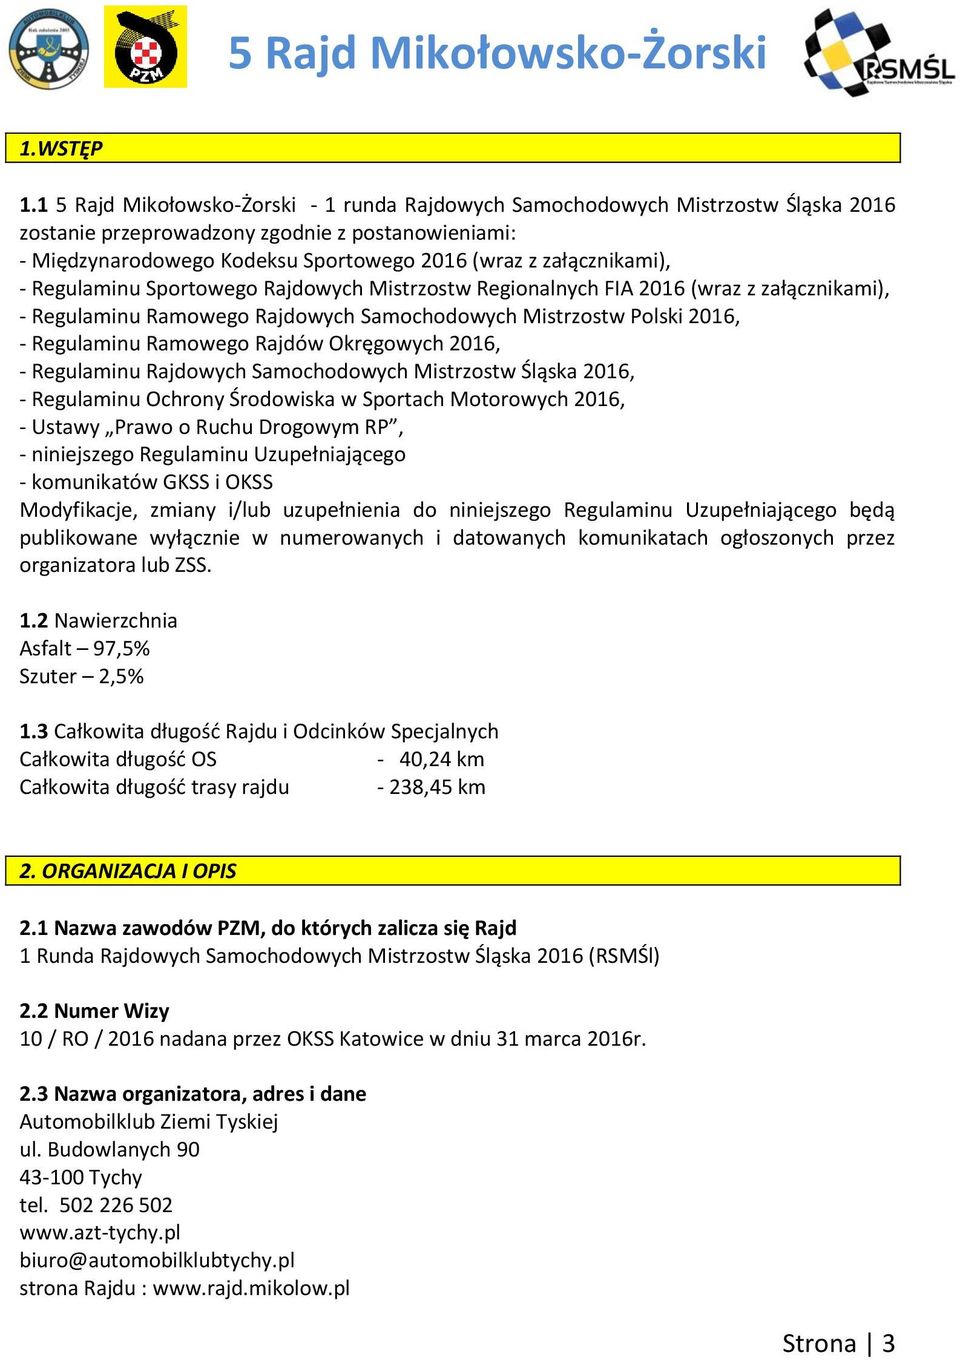 załącznikami), - Regulaminu Sportowego Rajdowych Mistrzostw Regionalnych FIA 2016 (wraz z załącznikami), - Regulaminu Ramowego Rajdowych Samochodowych Mistrzostw Polski 2016, - Regulaminu Ramowego